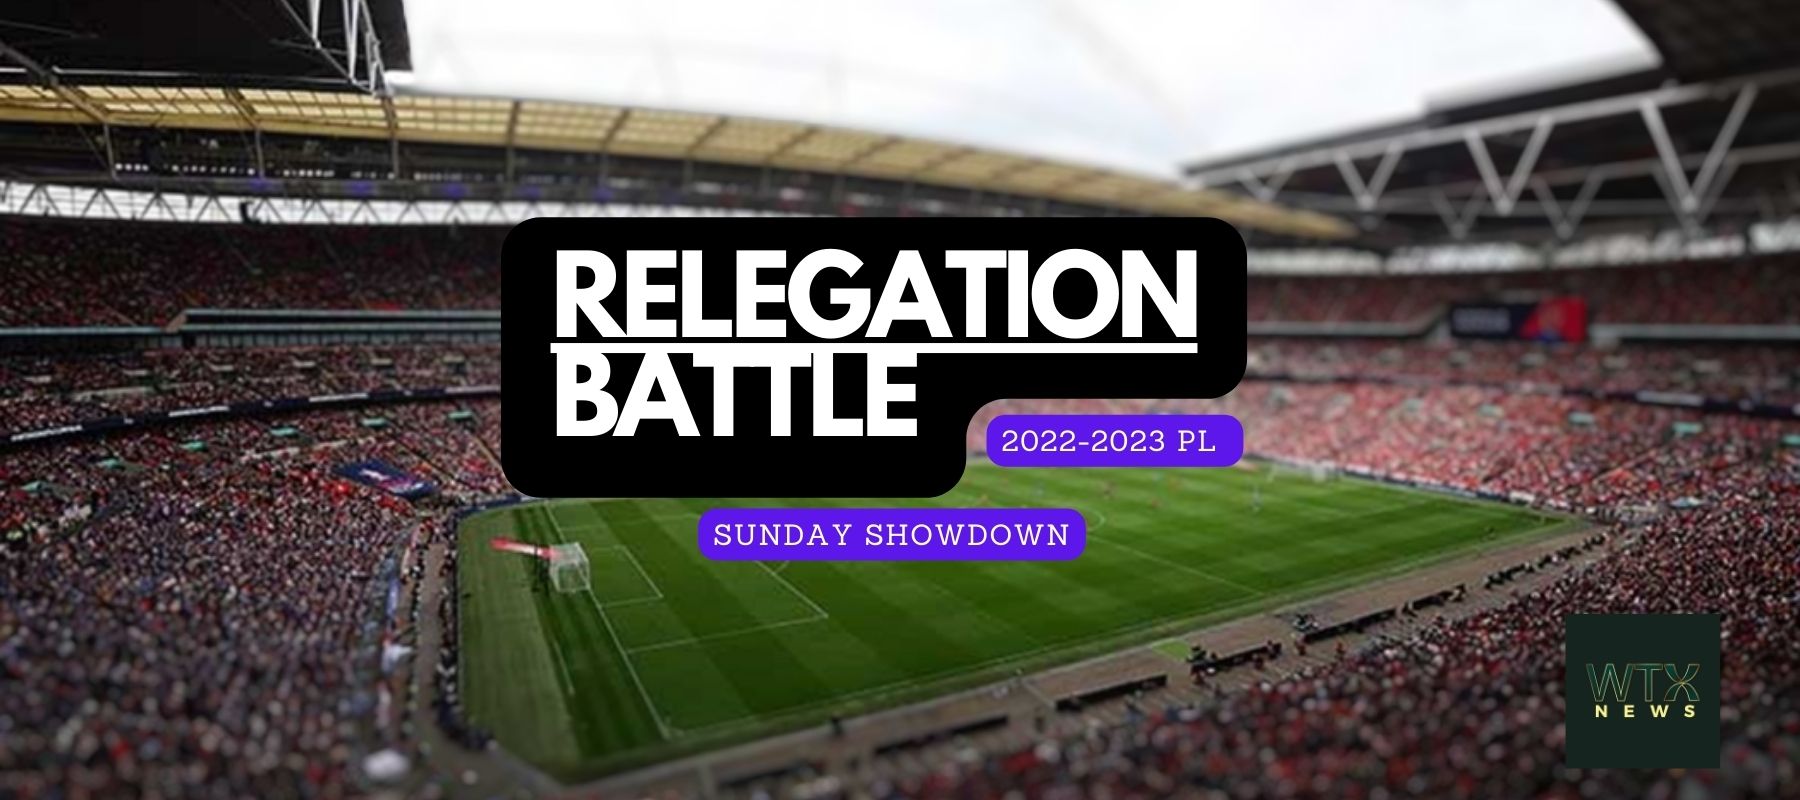 Premier League final day: Sunday's relegation battle